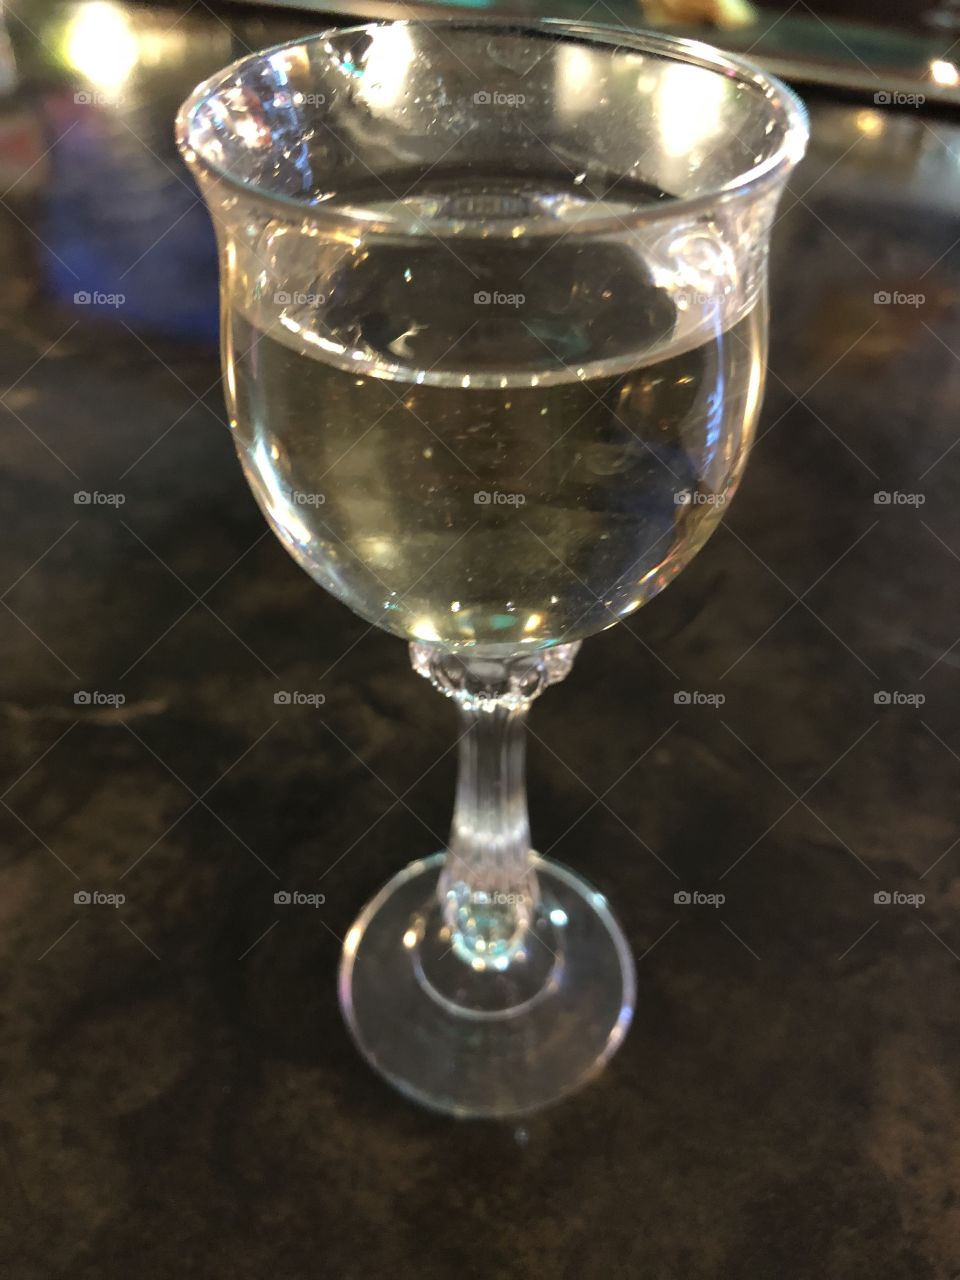 Tiny wine glass